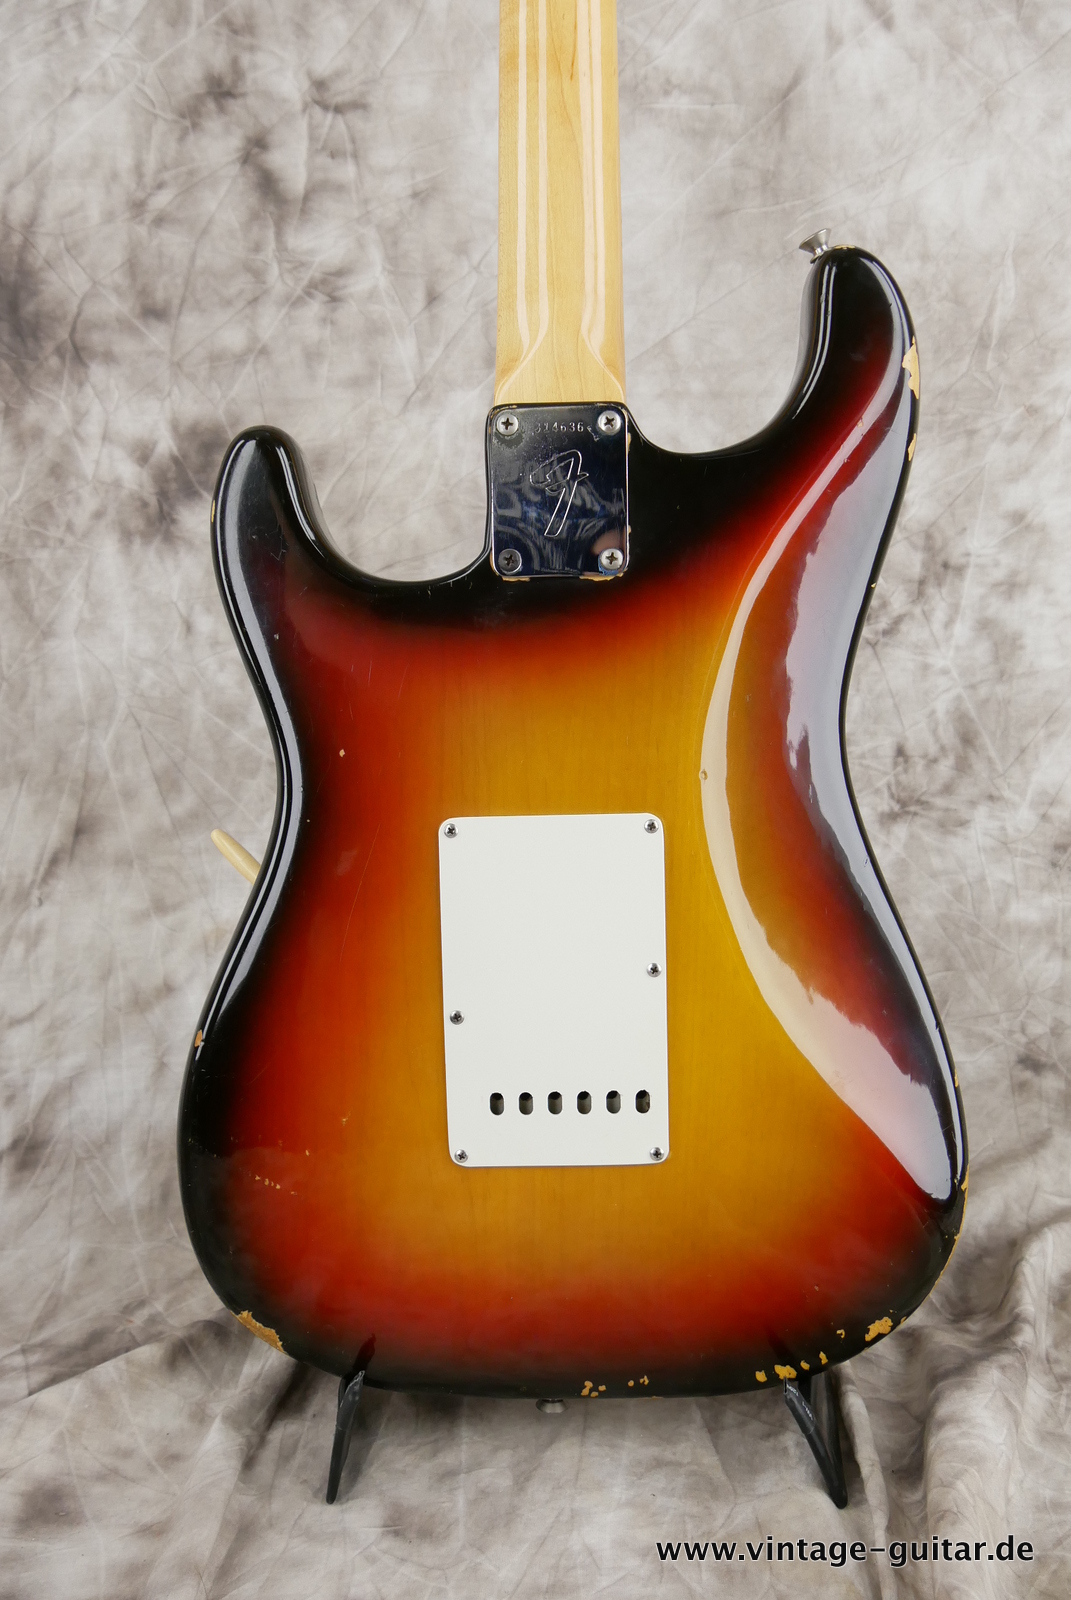 Fender-Stratocaster-1971-sunburst-4-hole-004.JPG